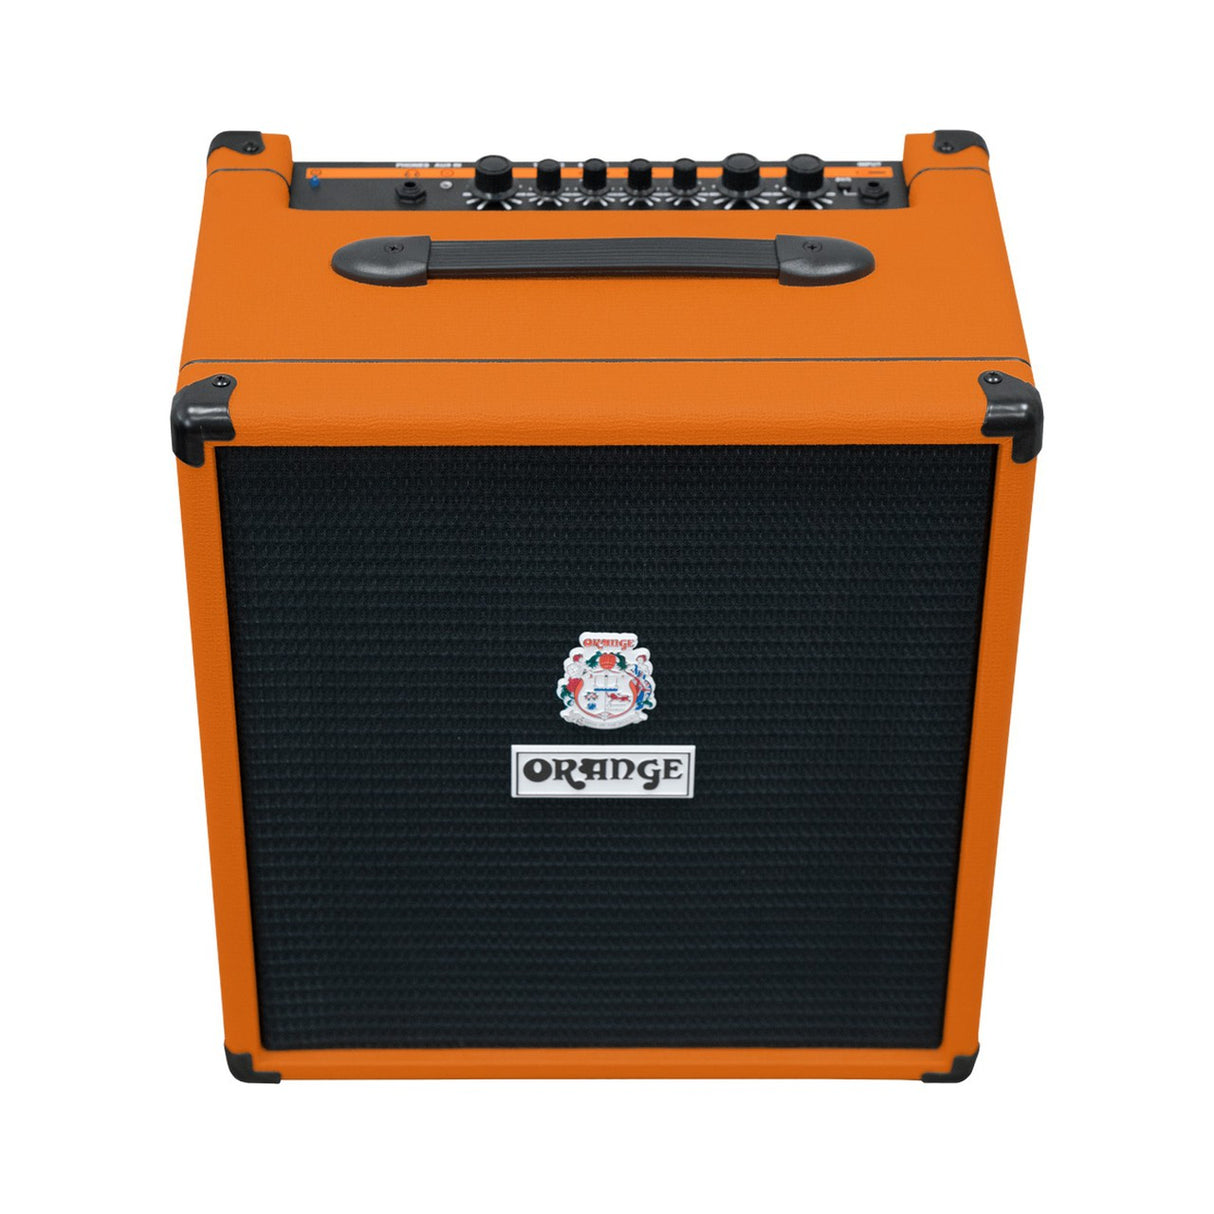 Orange CRUSH-BASS-50 50 Watt 12 Inch Bass Amp Combo Orange (Used)